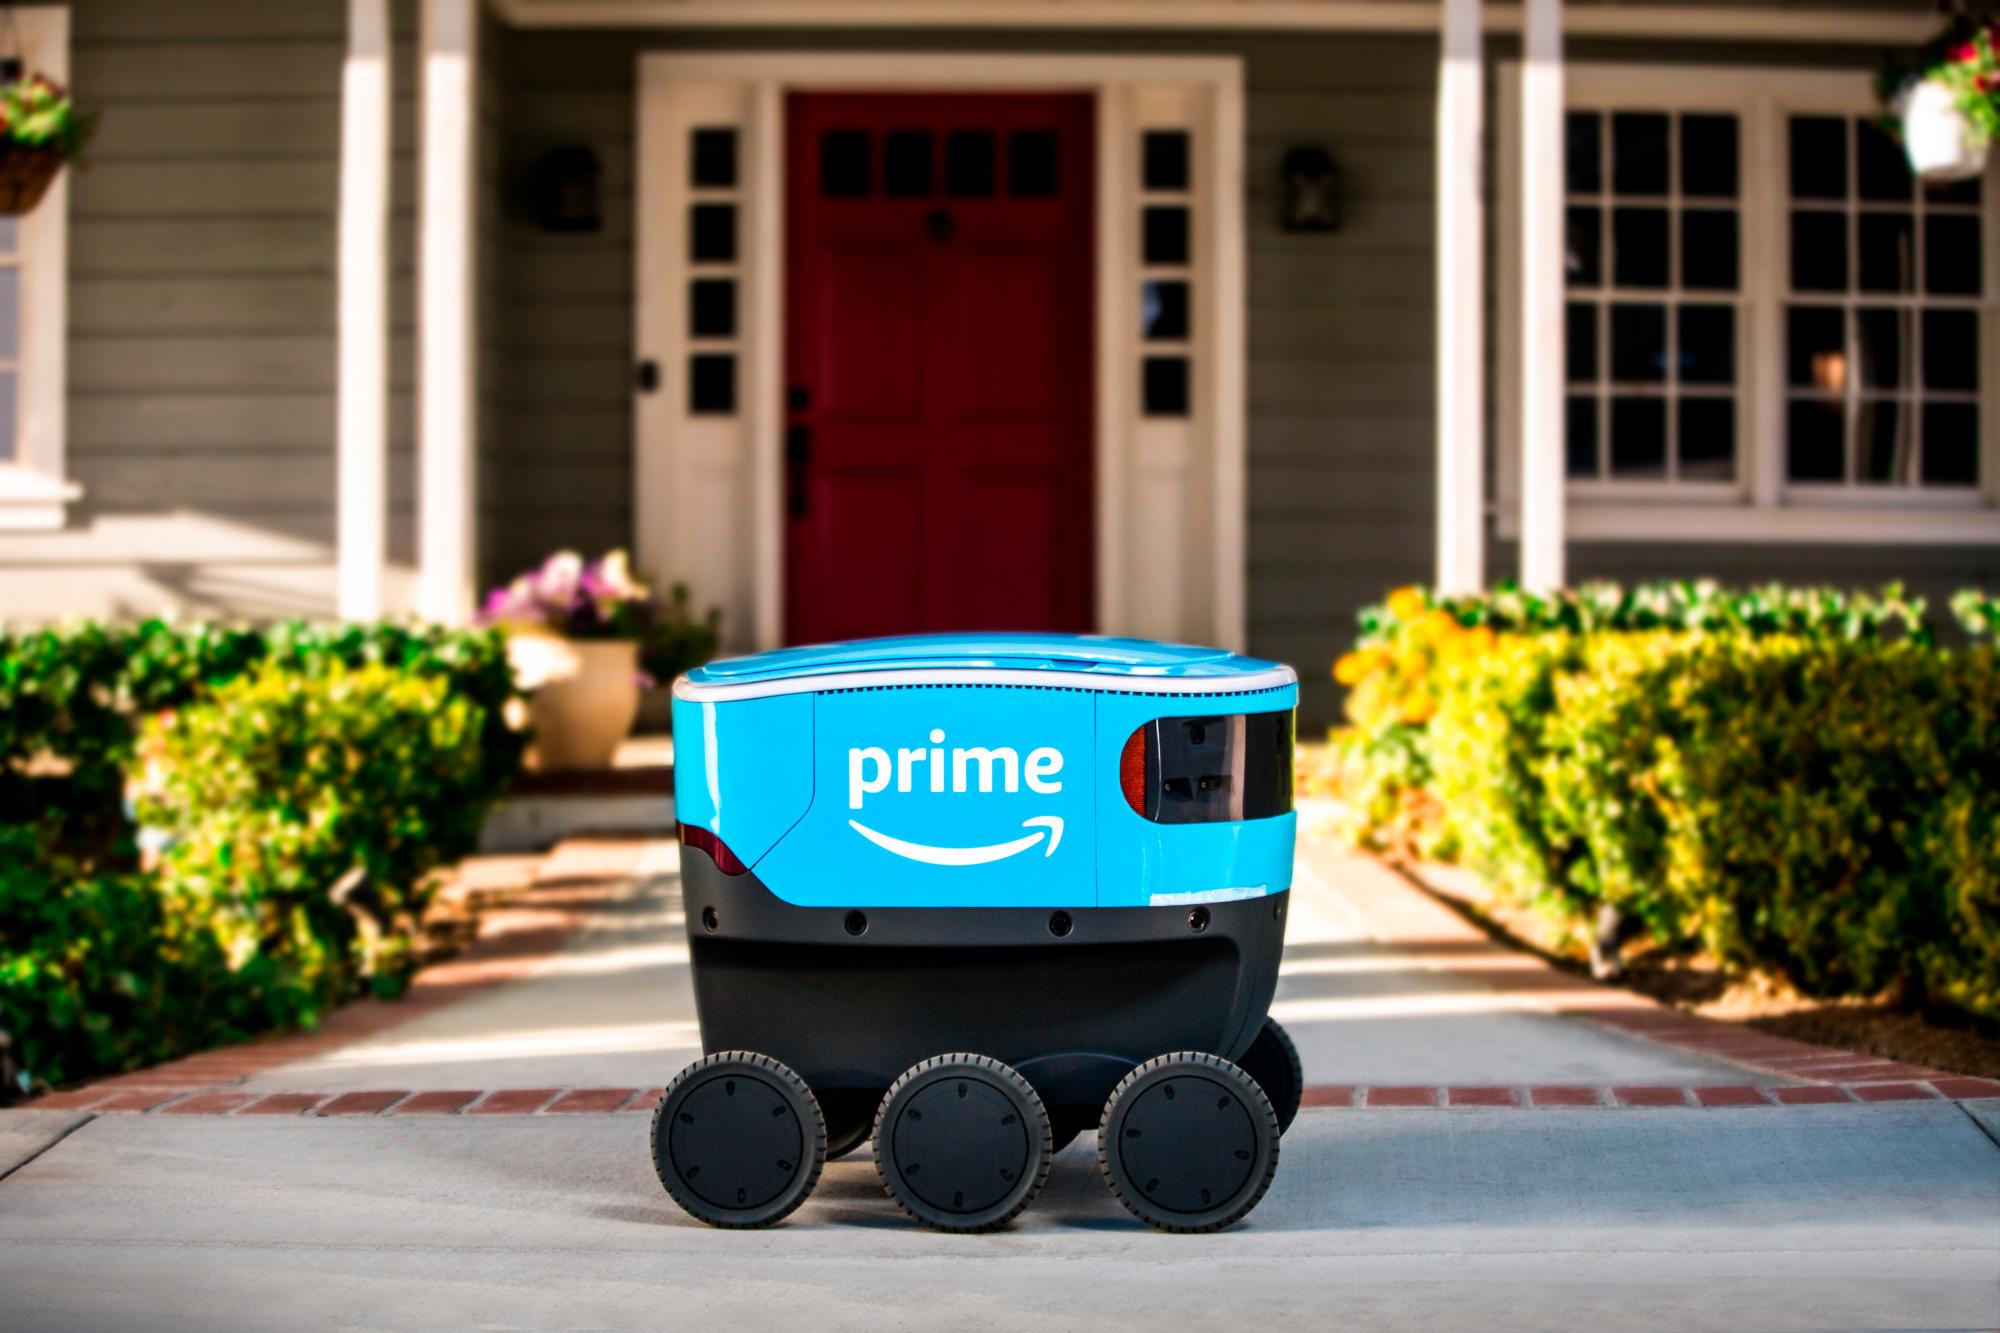 Esta es la versión de los robots de entrega autónoma en los que trabaja la compañía Amazon.